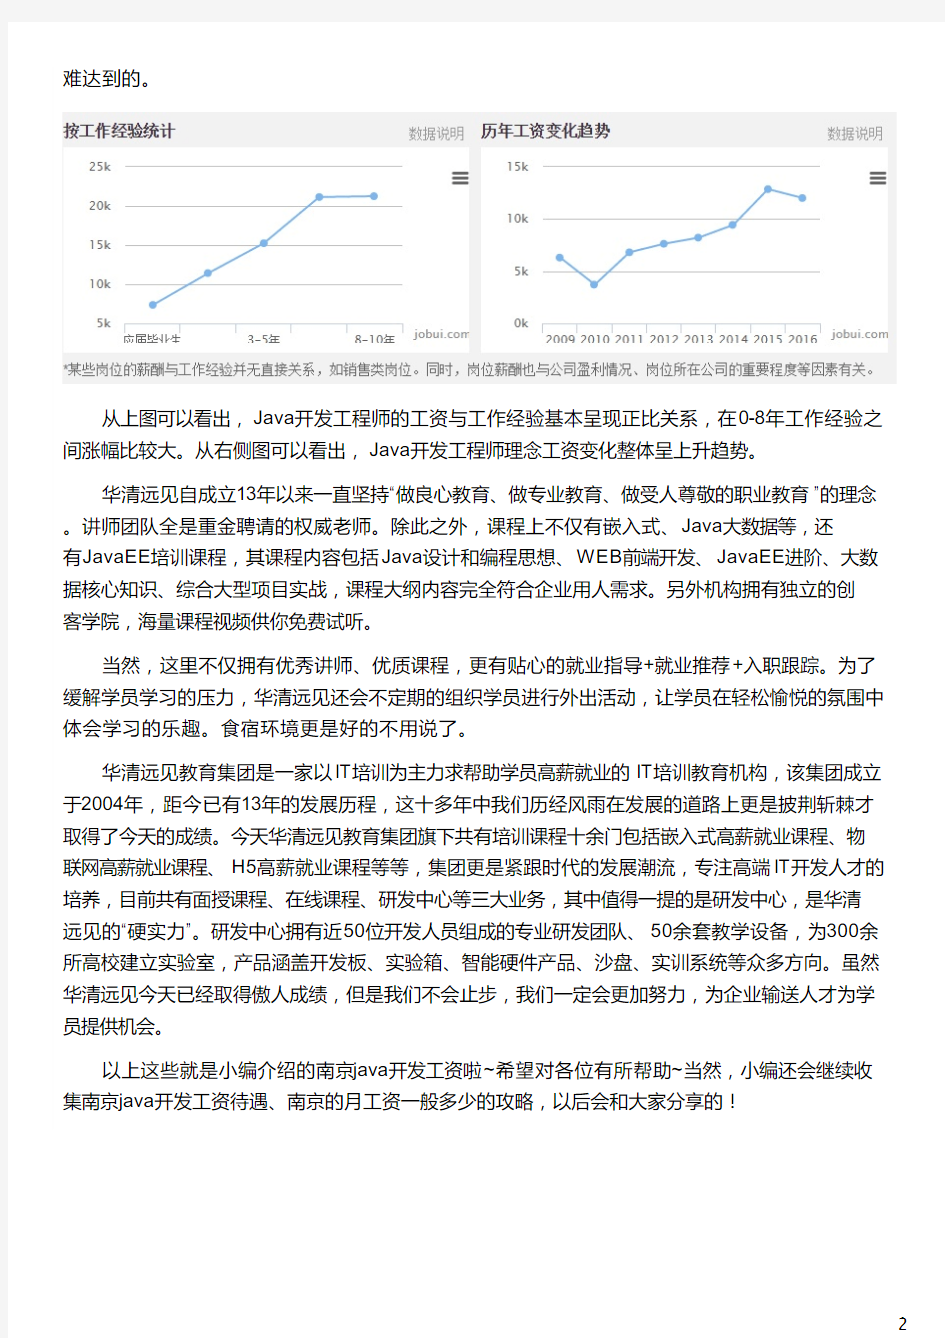 南京Java开发一般工资多少_华清远见